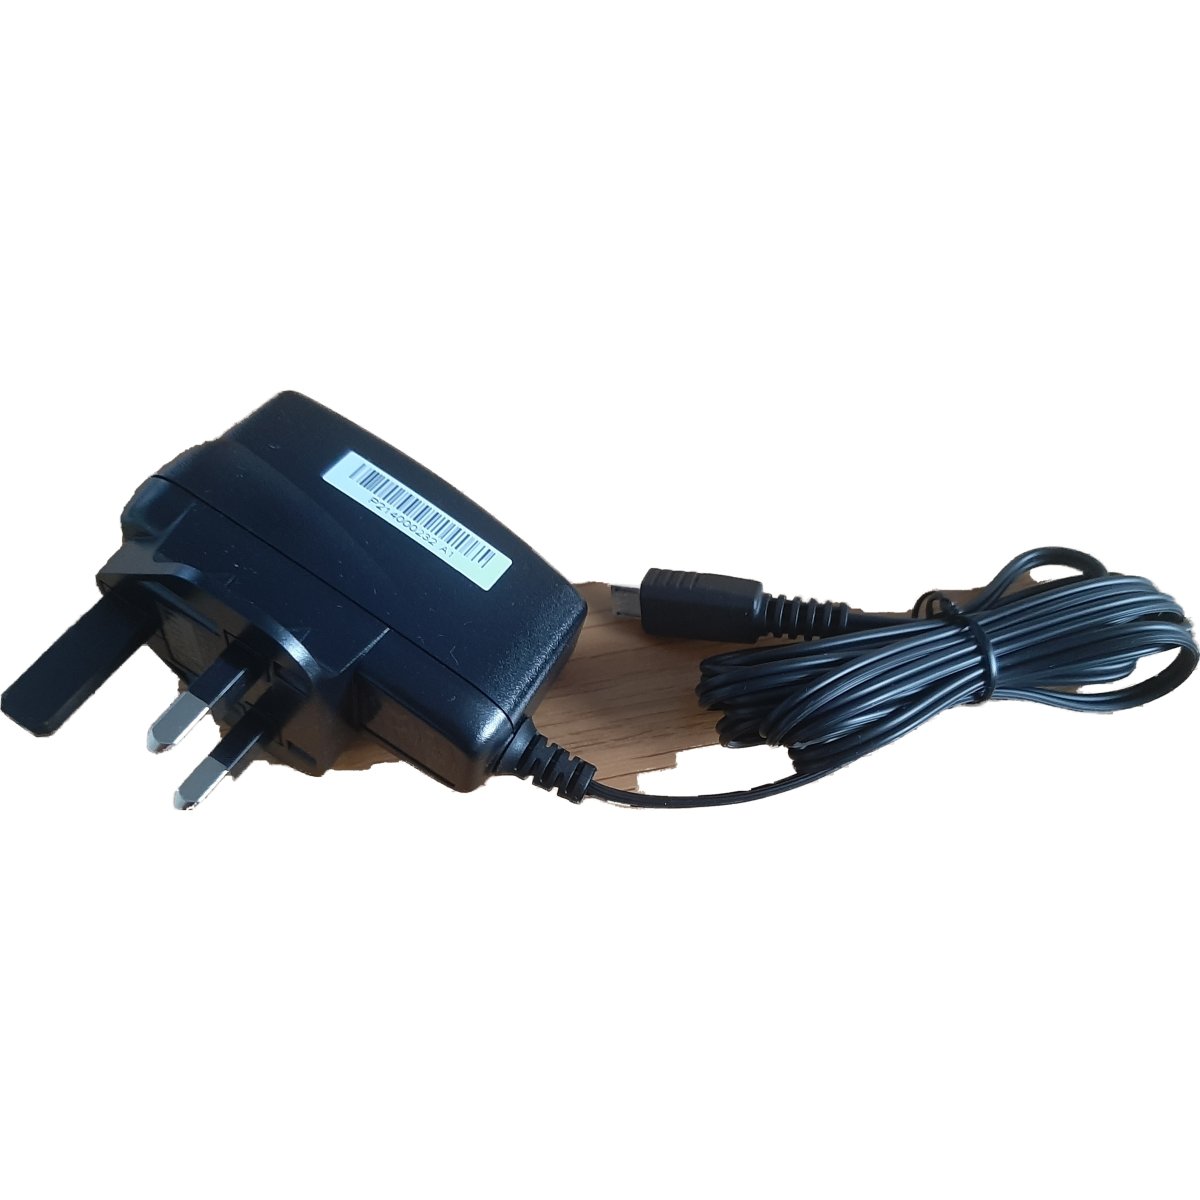 Bernafon UK Micro USB Power Adaptor With Cable - Alpha Clinics